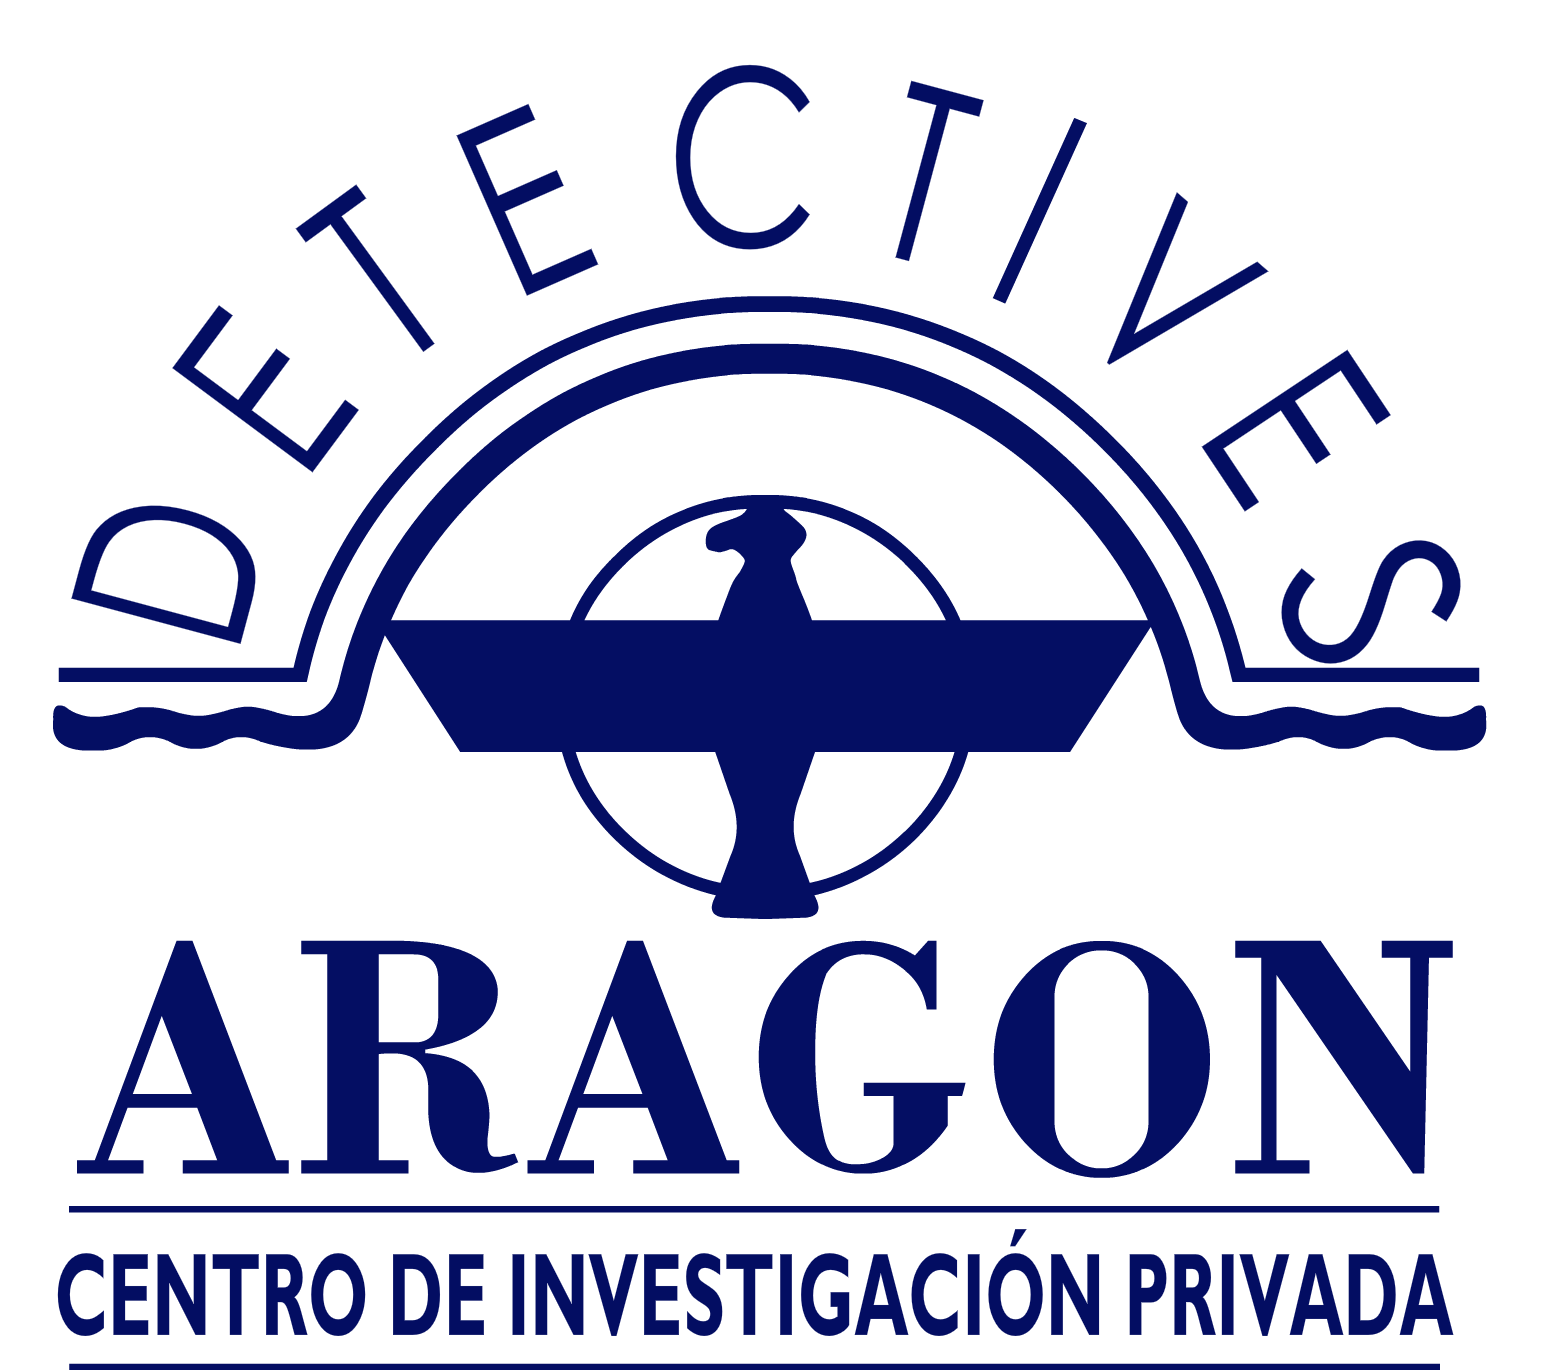 Detectives Aragón